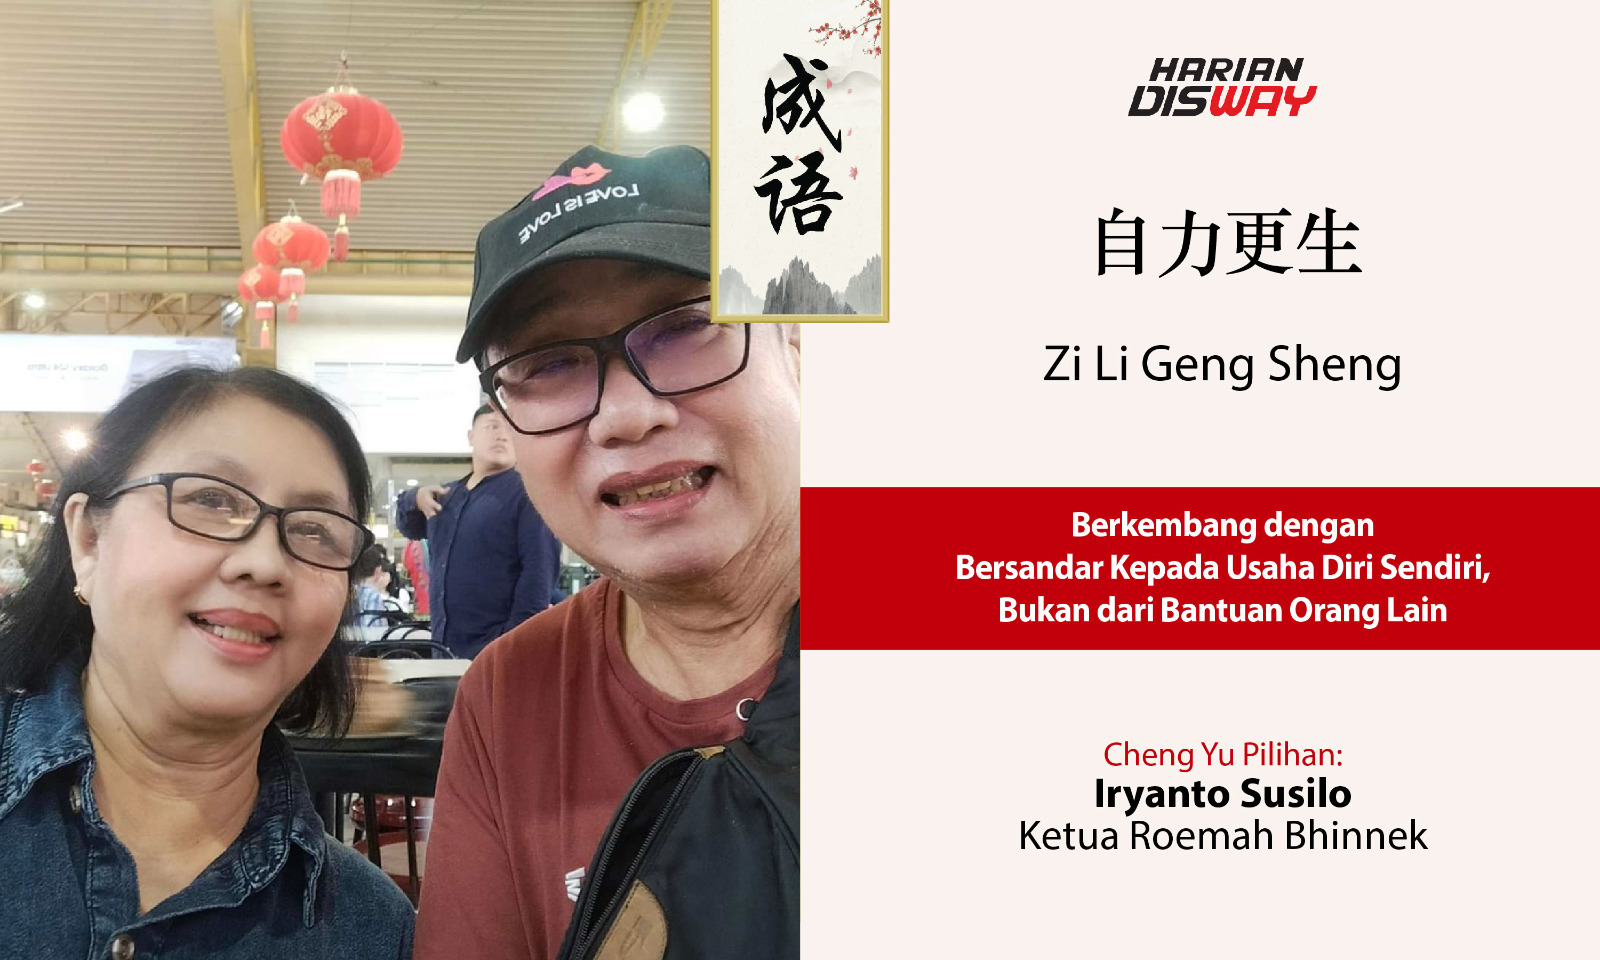 Cheng Yu Pilihan Ketua Roemah Bhinneka Iryanto Susilo: Zi Li Geng Sheng